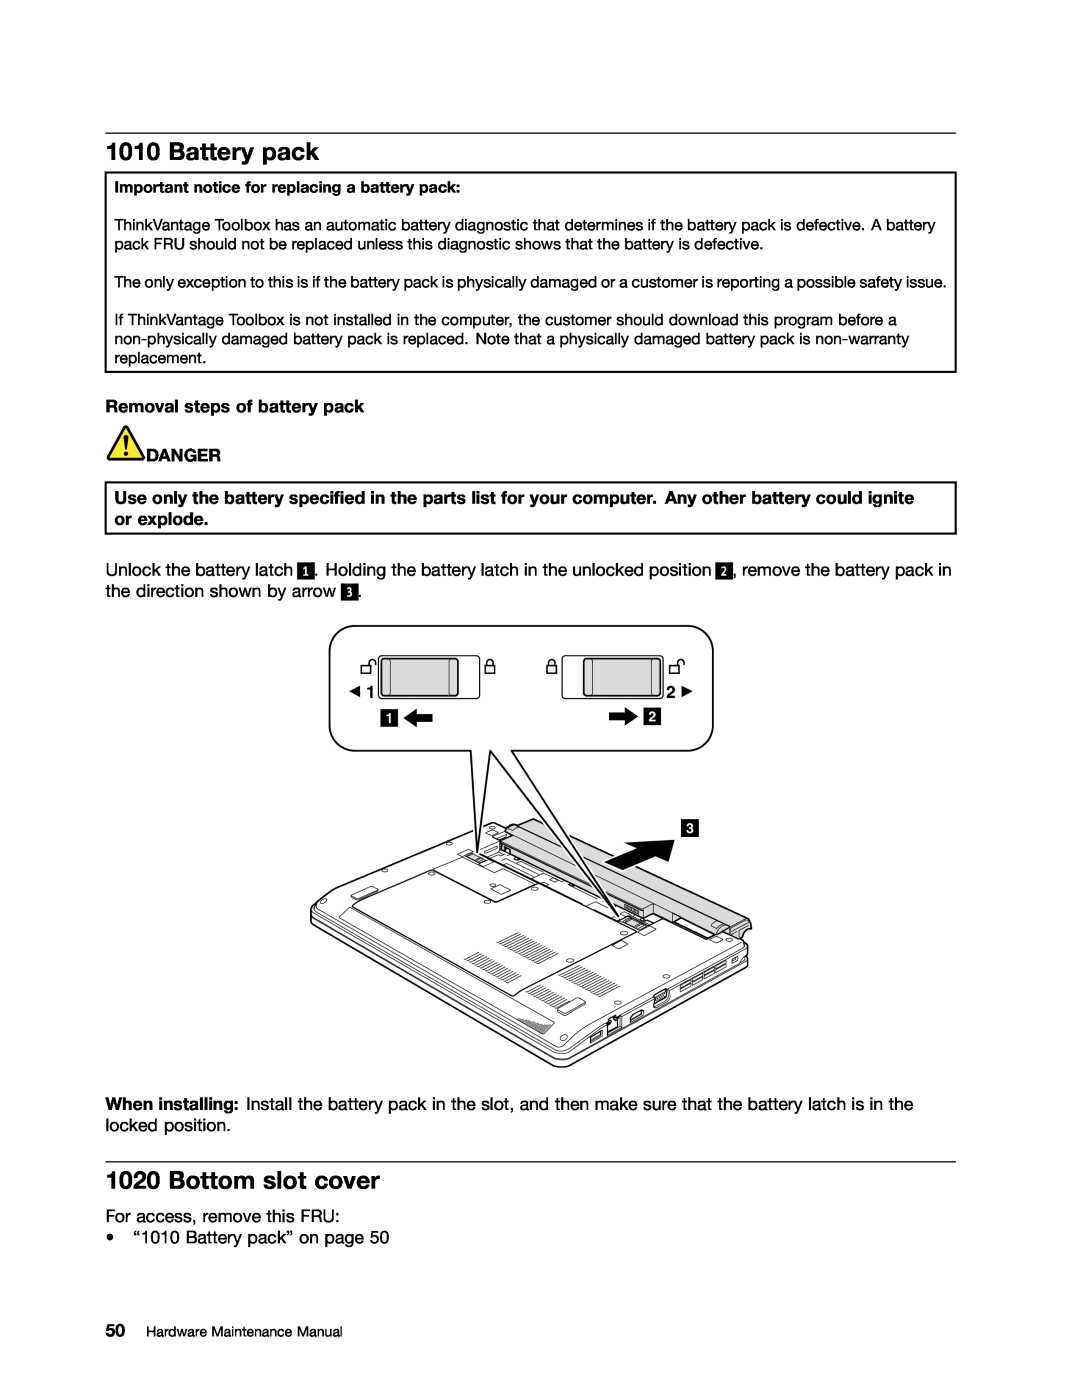 Lenovo EDGE 13, E31, E30 manual Battery pack, Bottom slot cover, Removal steps of battery pack DANGER 